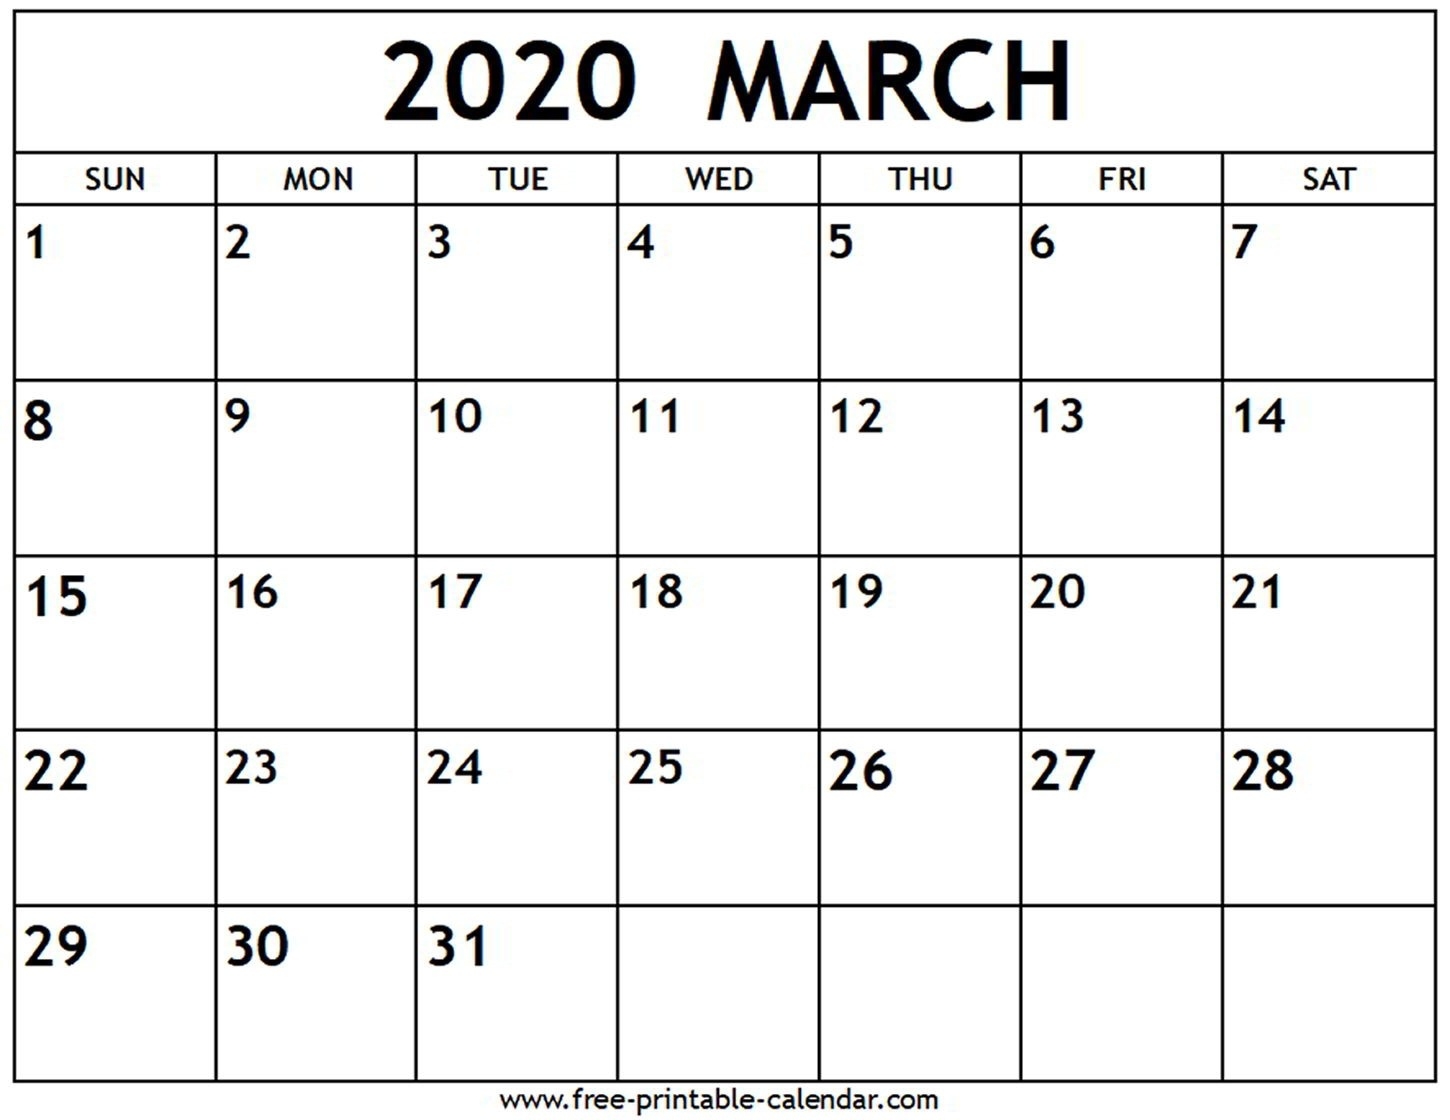 2020 March Calendar Printable | Teekayshippingcorporation March 2020 Calendar Printable Org